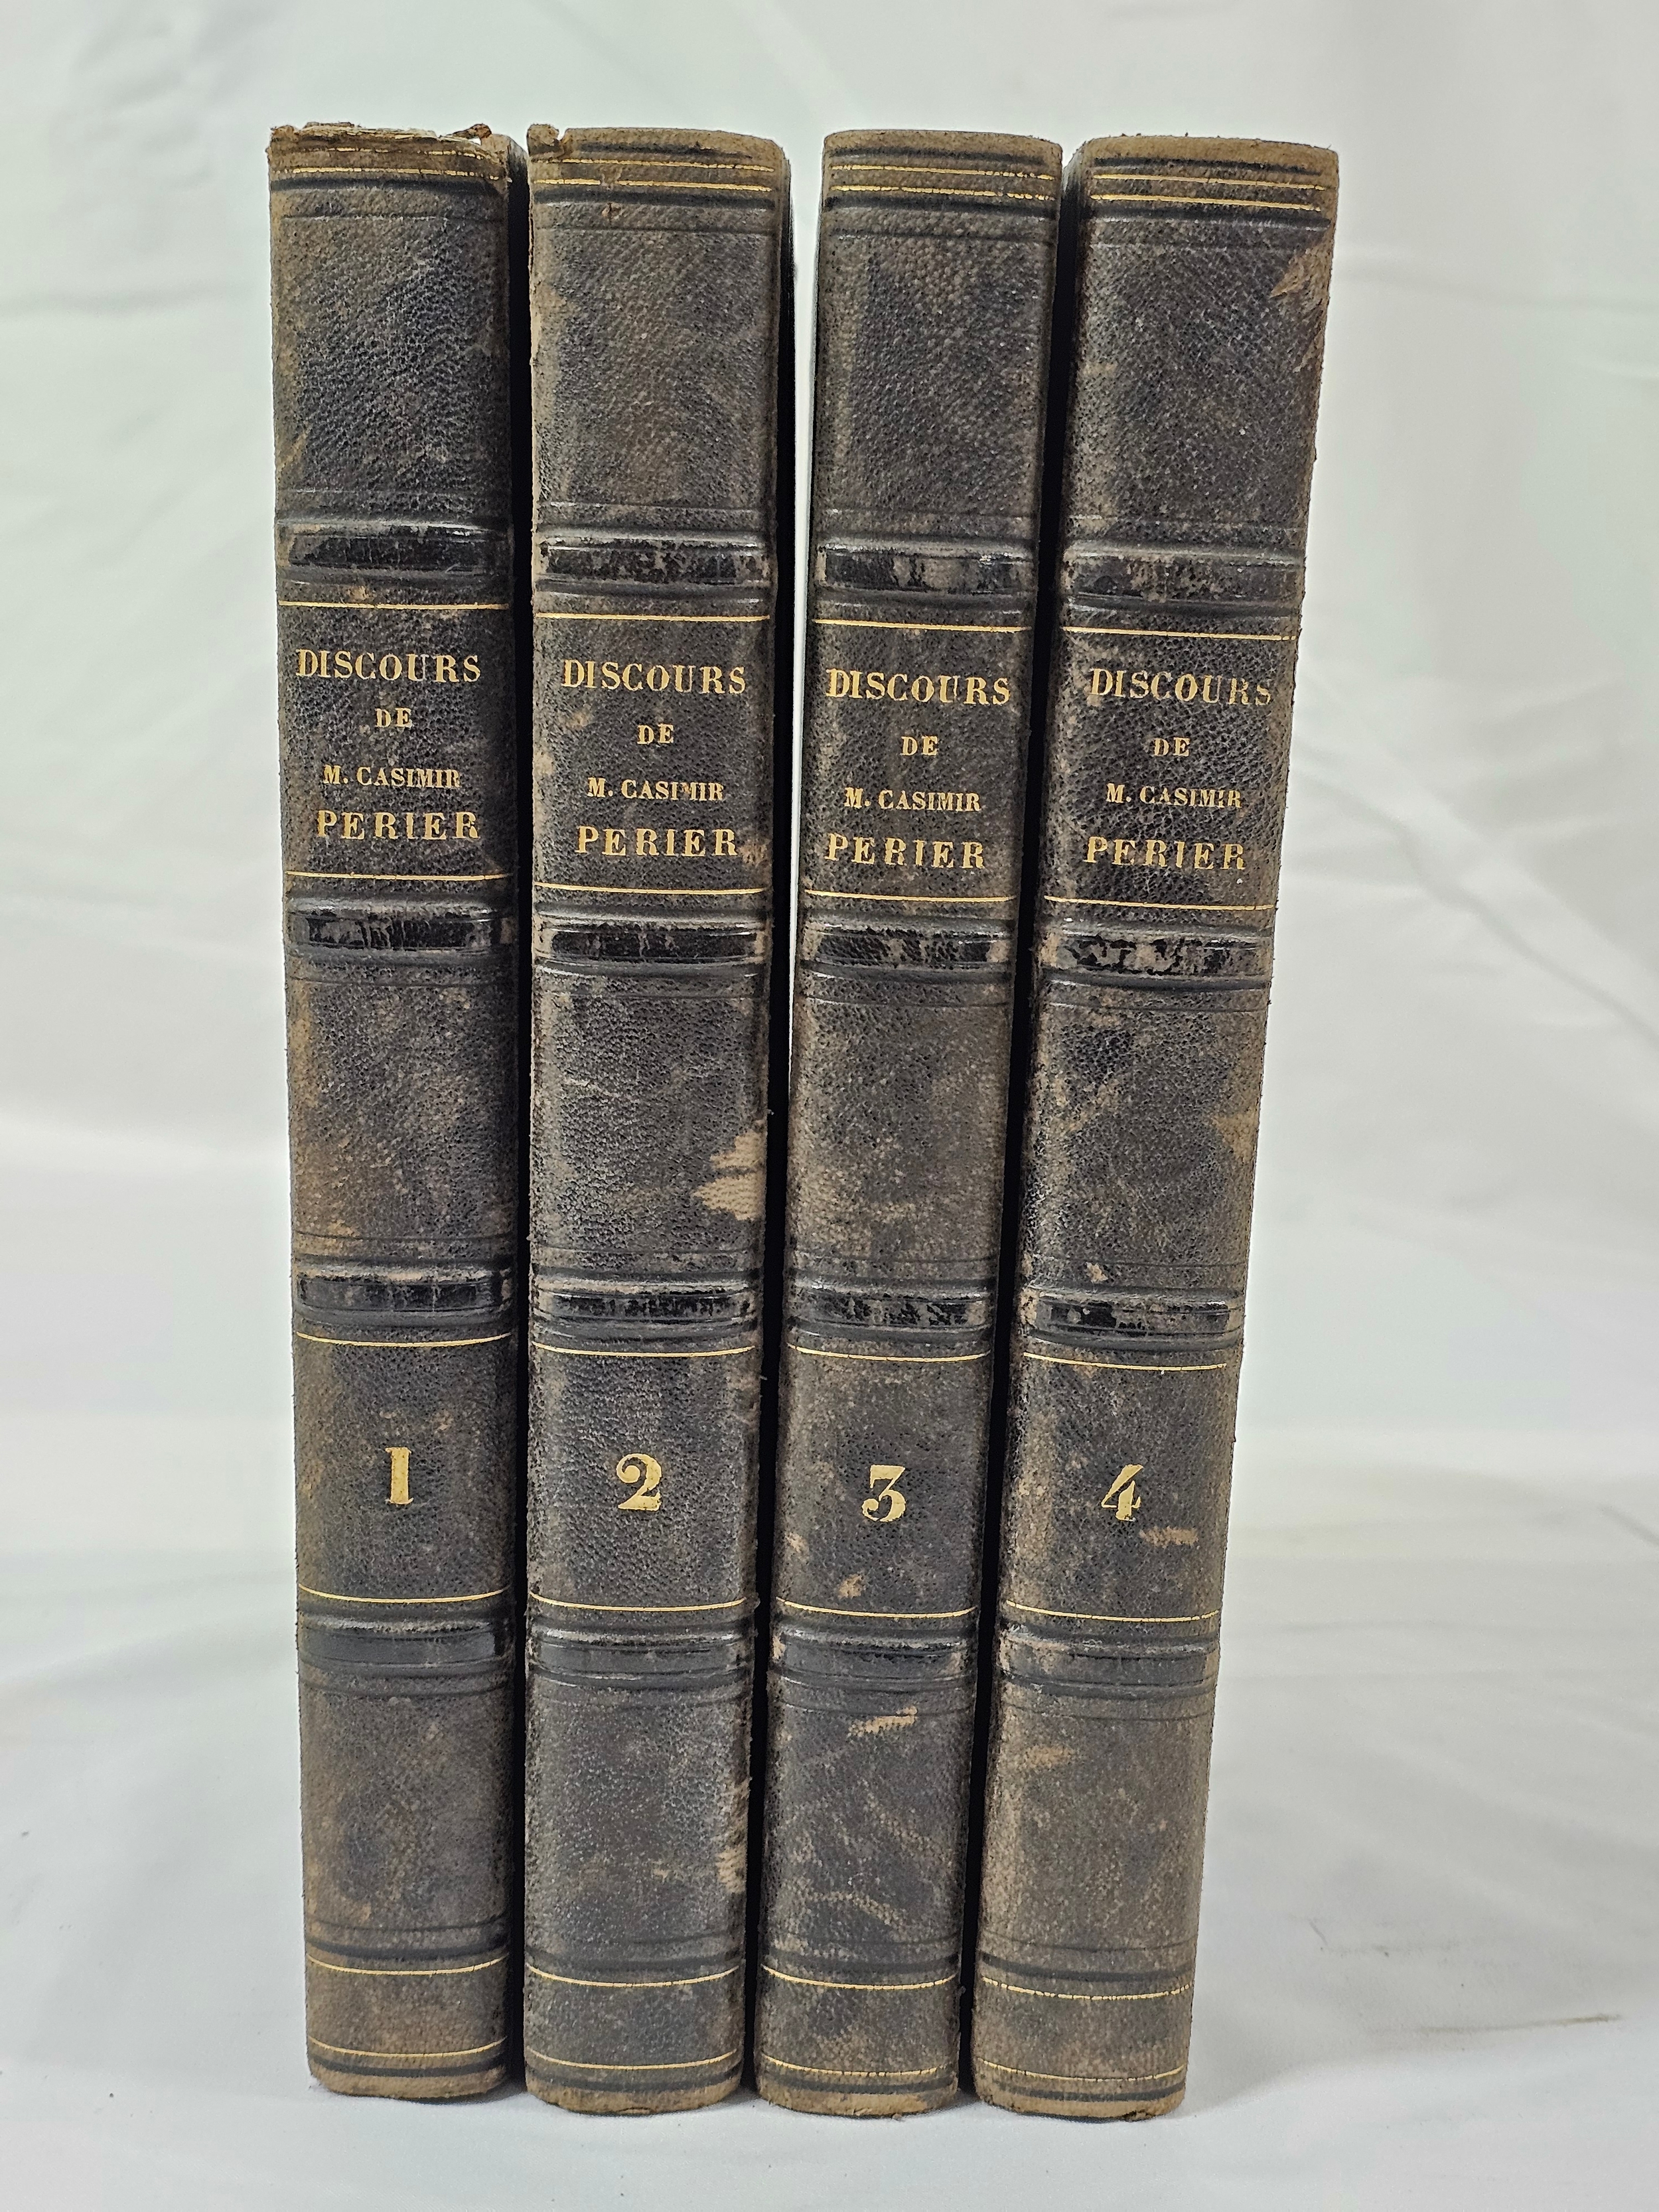 Opinions et discours de M. Casimir Périer. Published Paris by Paulin, 1838. Complete set of four